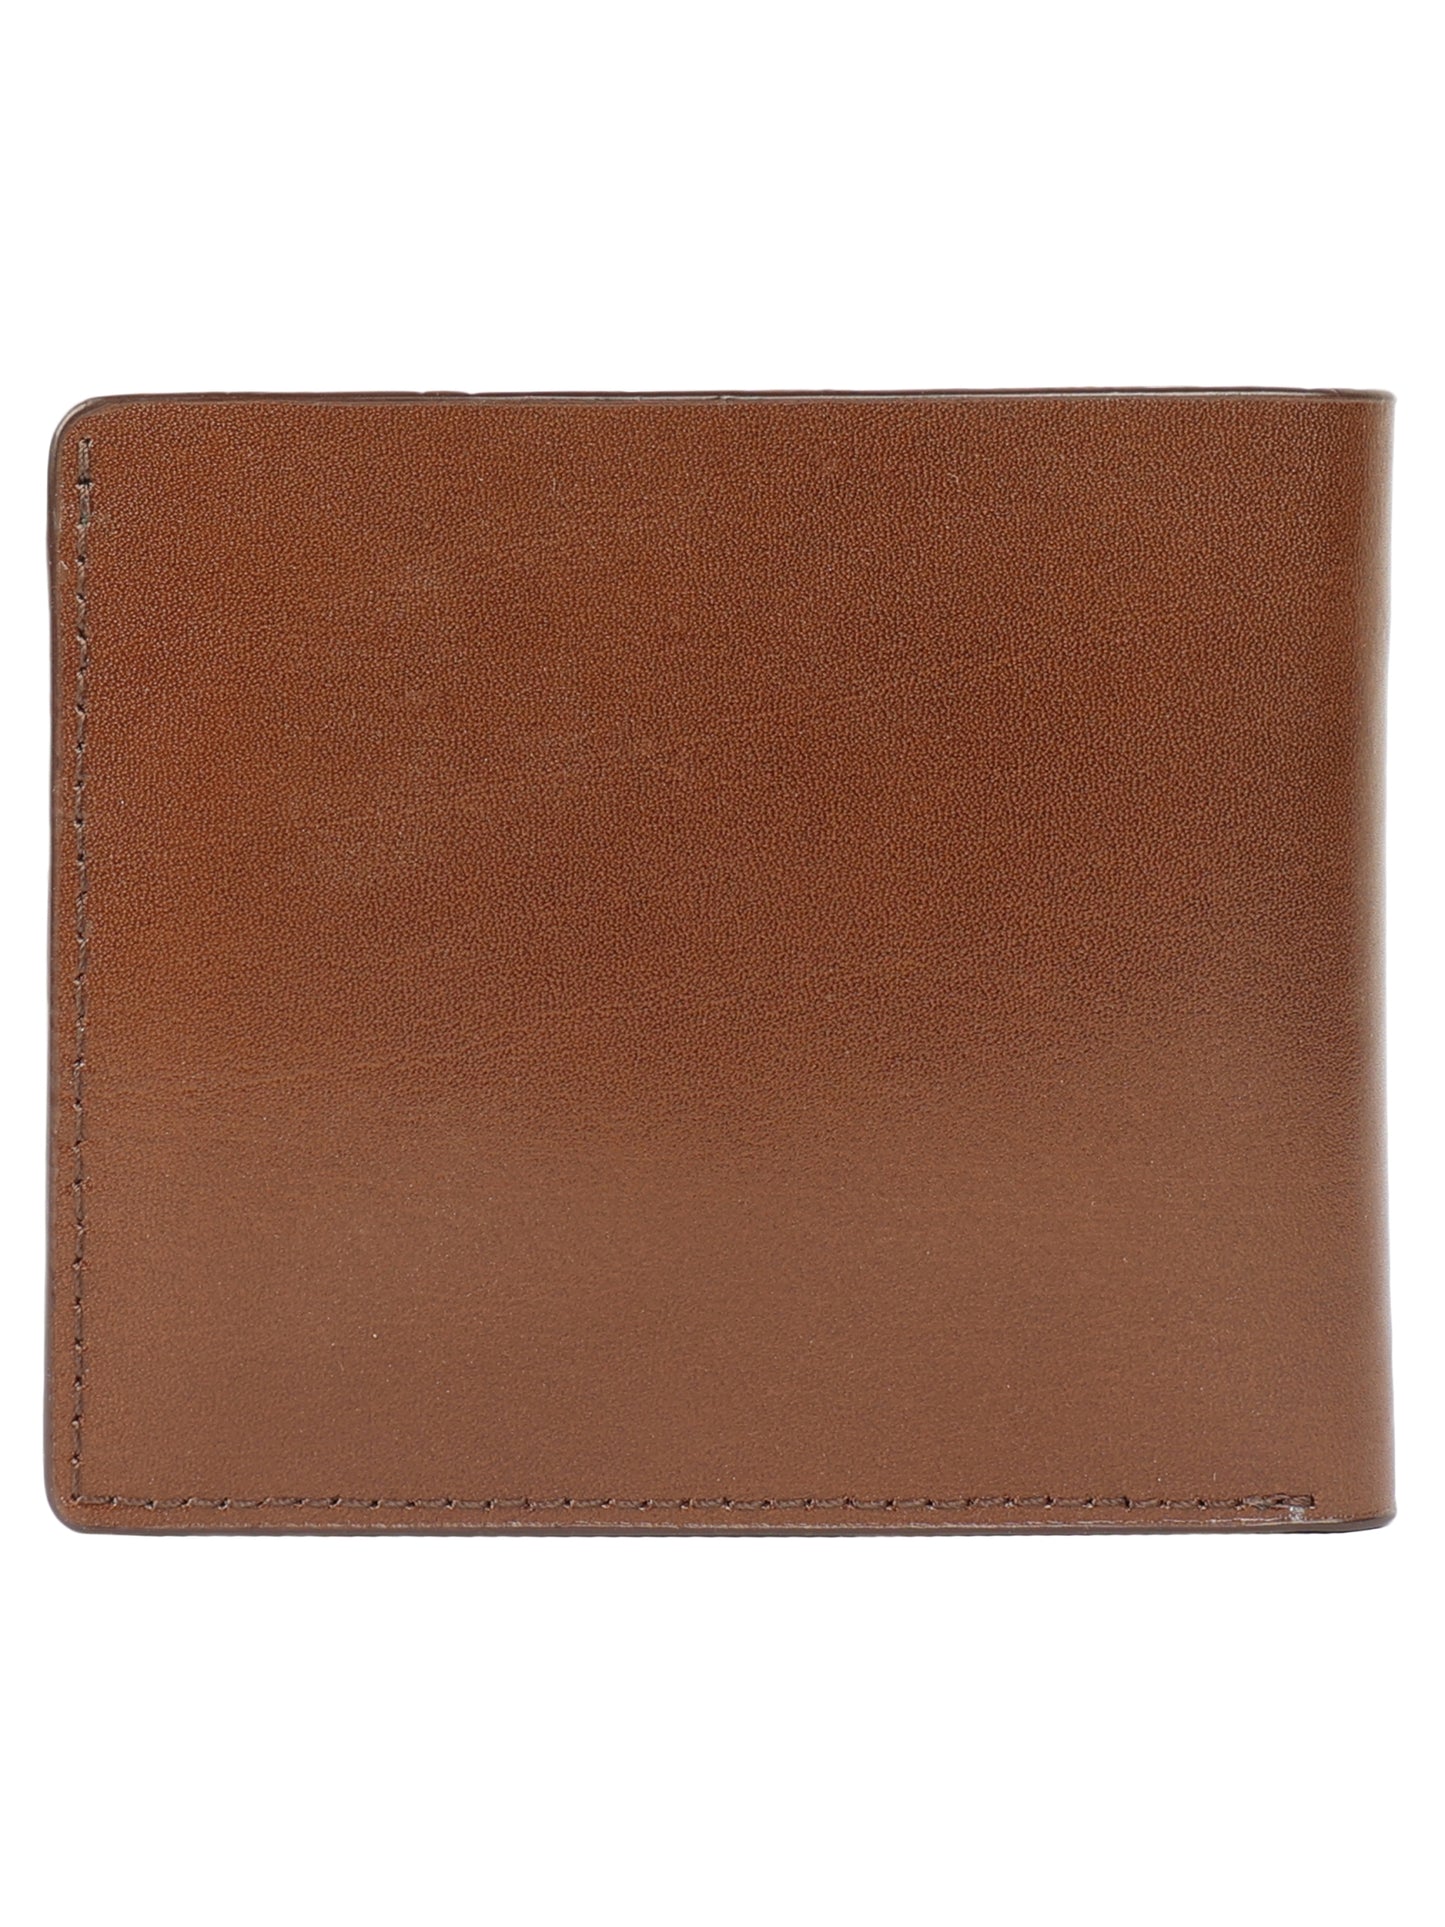 Alvaro Castagnino Men's Brown Color Leather Wallet